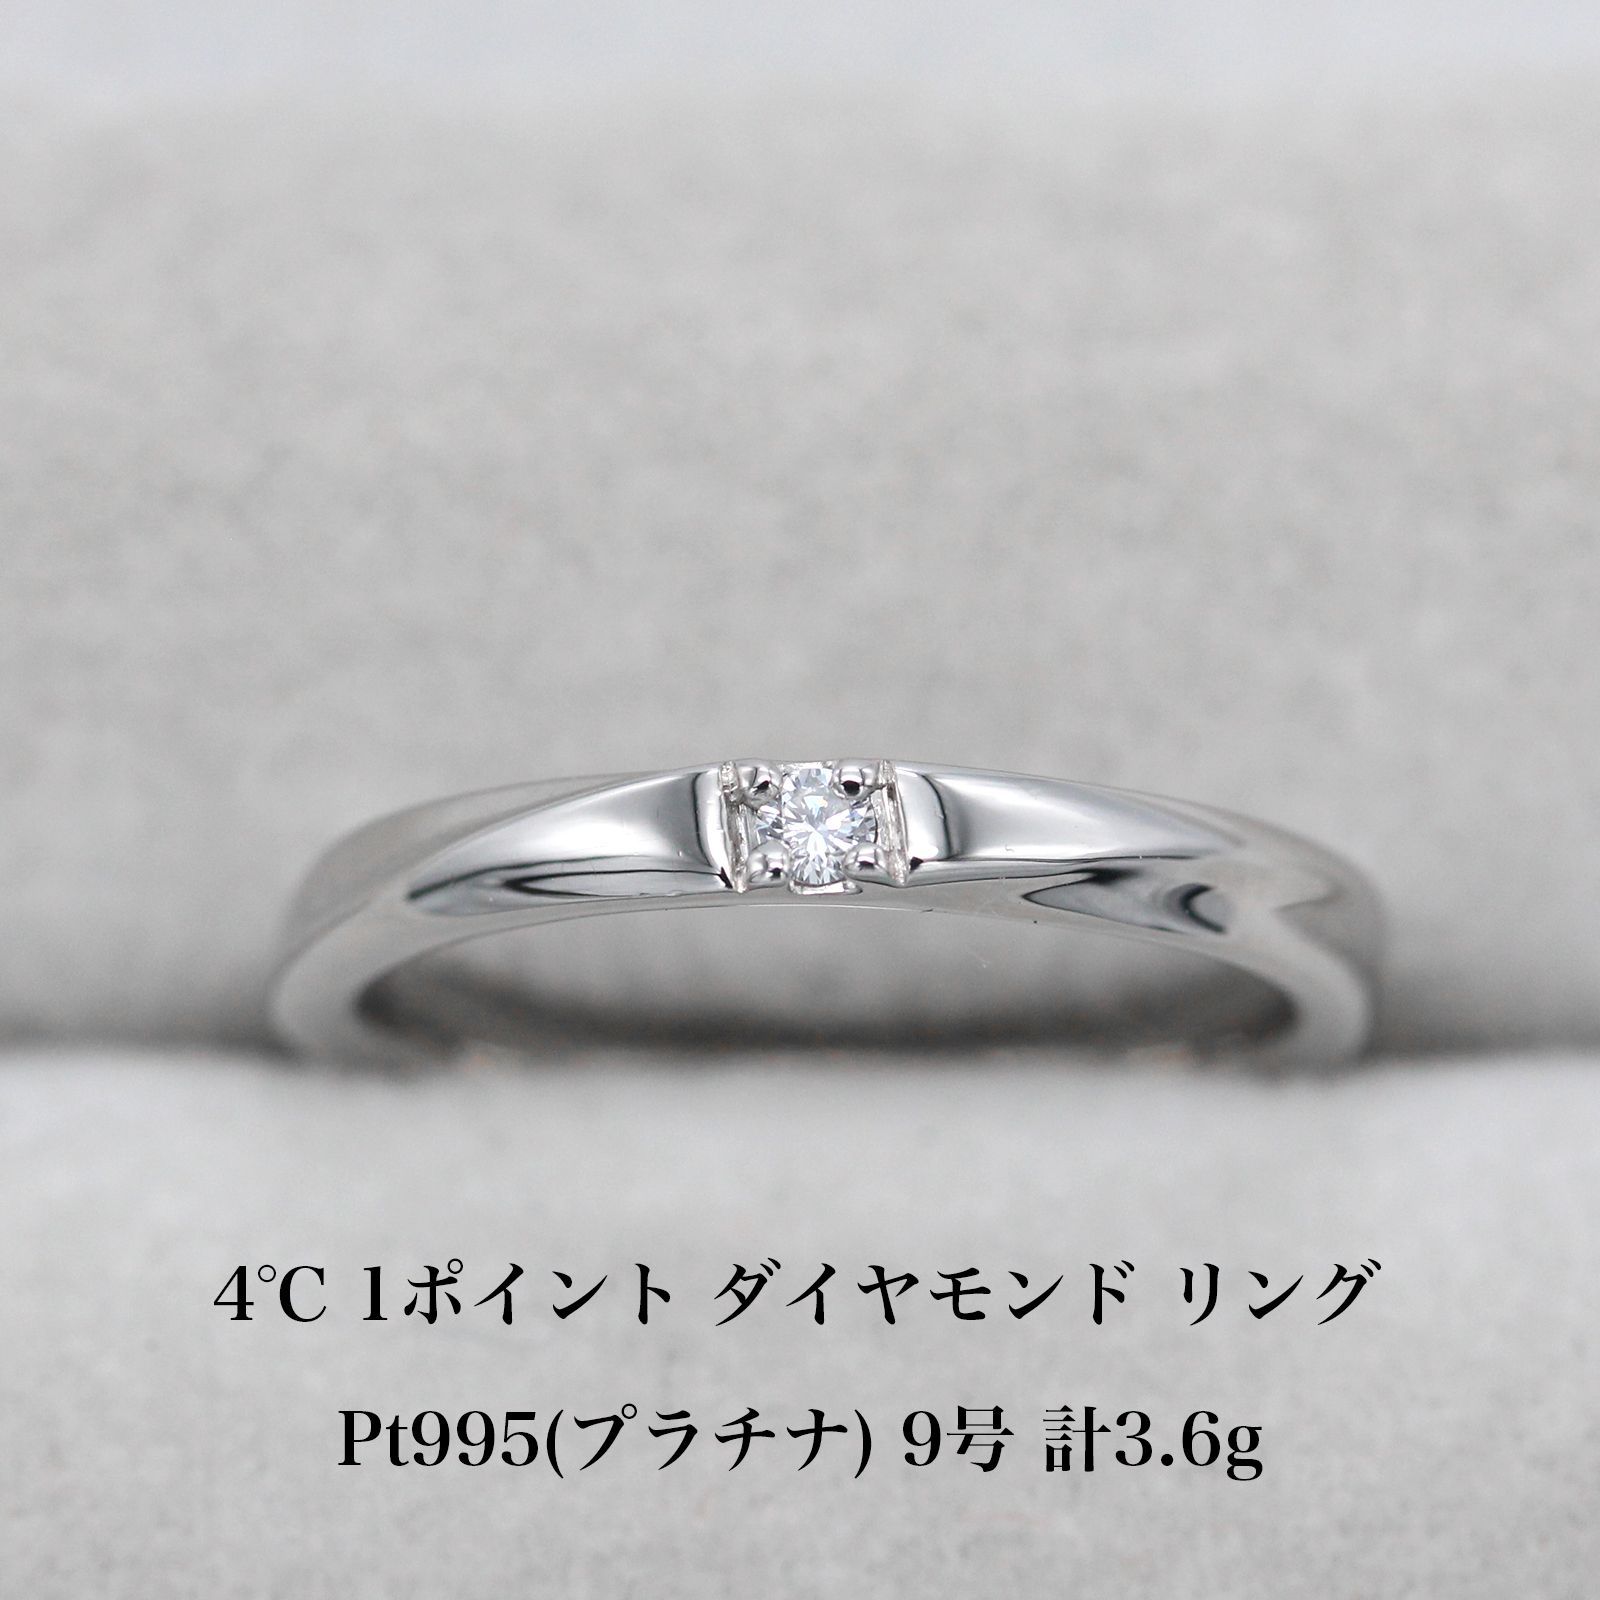 極美品 4℃ 1ポイントダイヤモンド Pt995 プラチナ リング 9号 アクセサリー ジュエリー 指輪 A03406